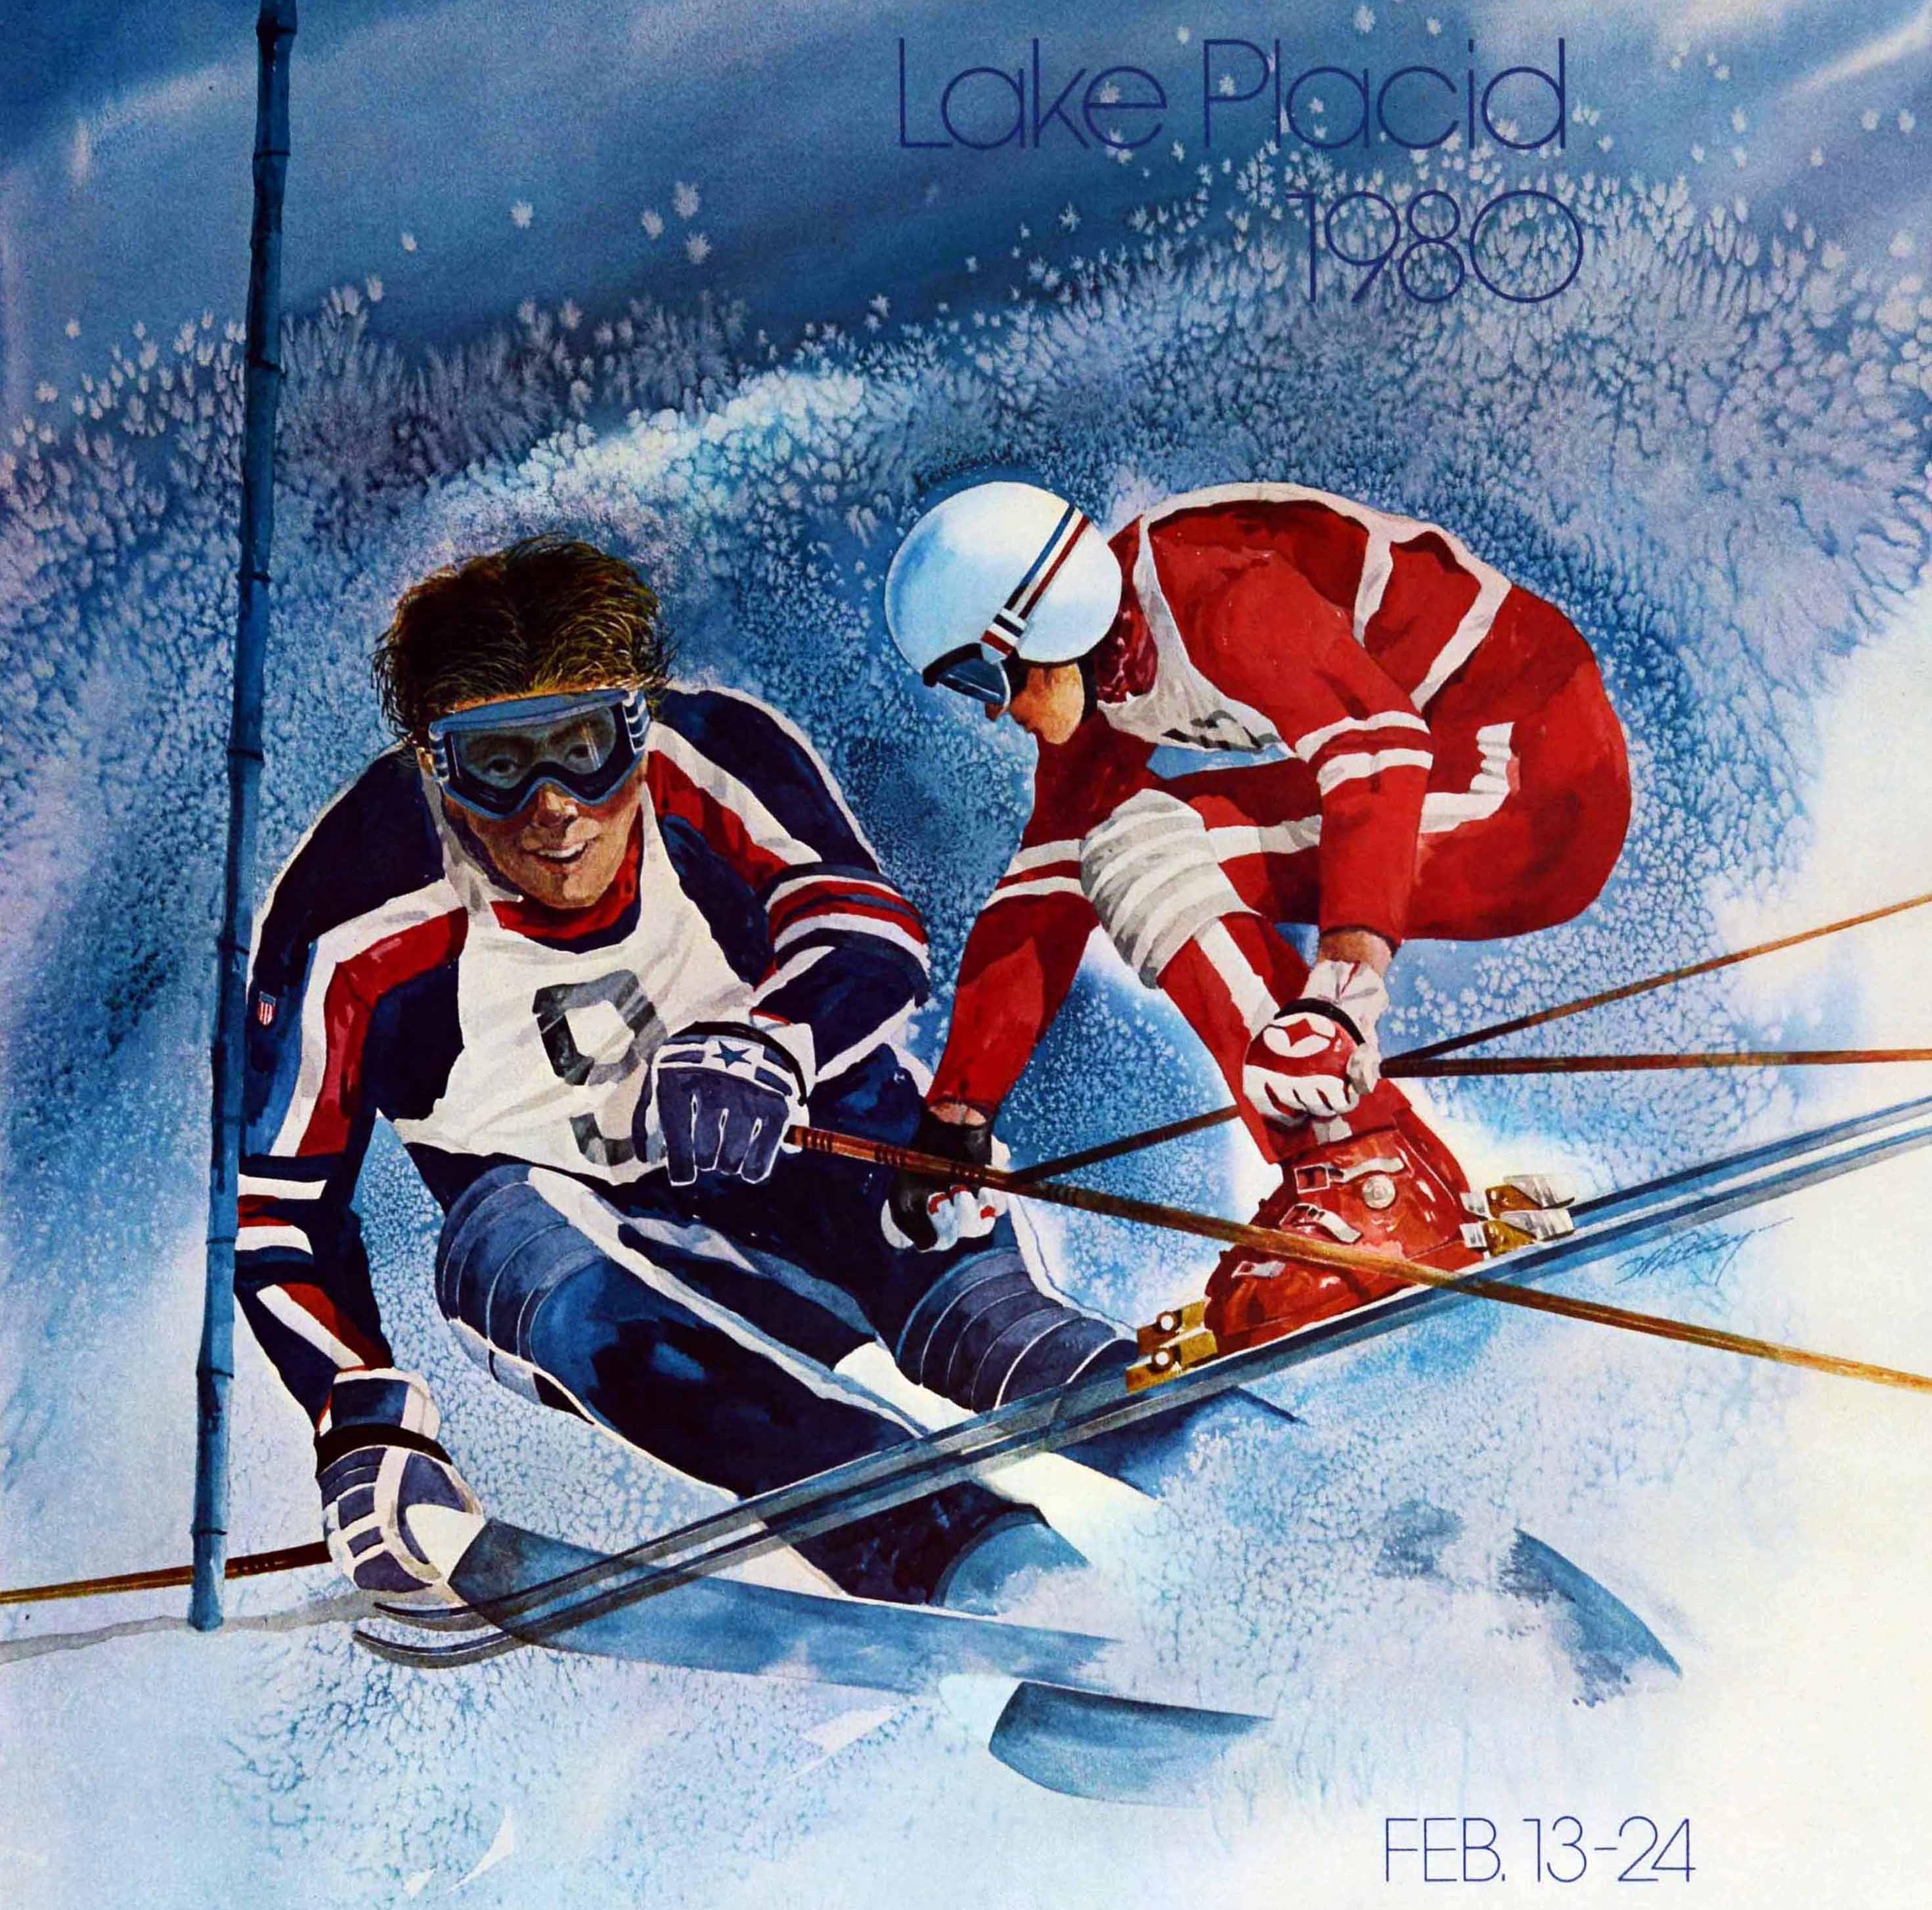 Affiche publicitaire originale pour les XIIIe Jeux olympiques d'hiver de Lake Placid 1980, qui se sont déroulés à New York (États-Unis) du 13 au 24 février. Elle présente une illustration dynamique de deux skieurs en combinaison de ski rouge, bleue